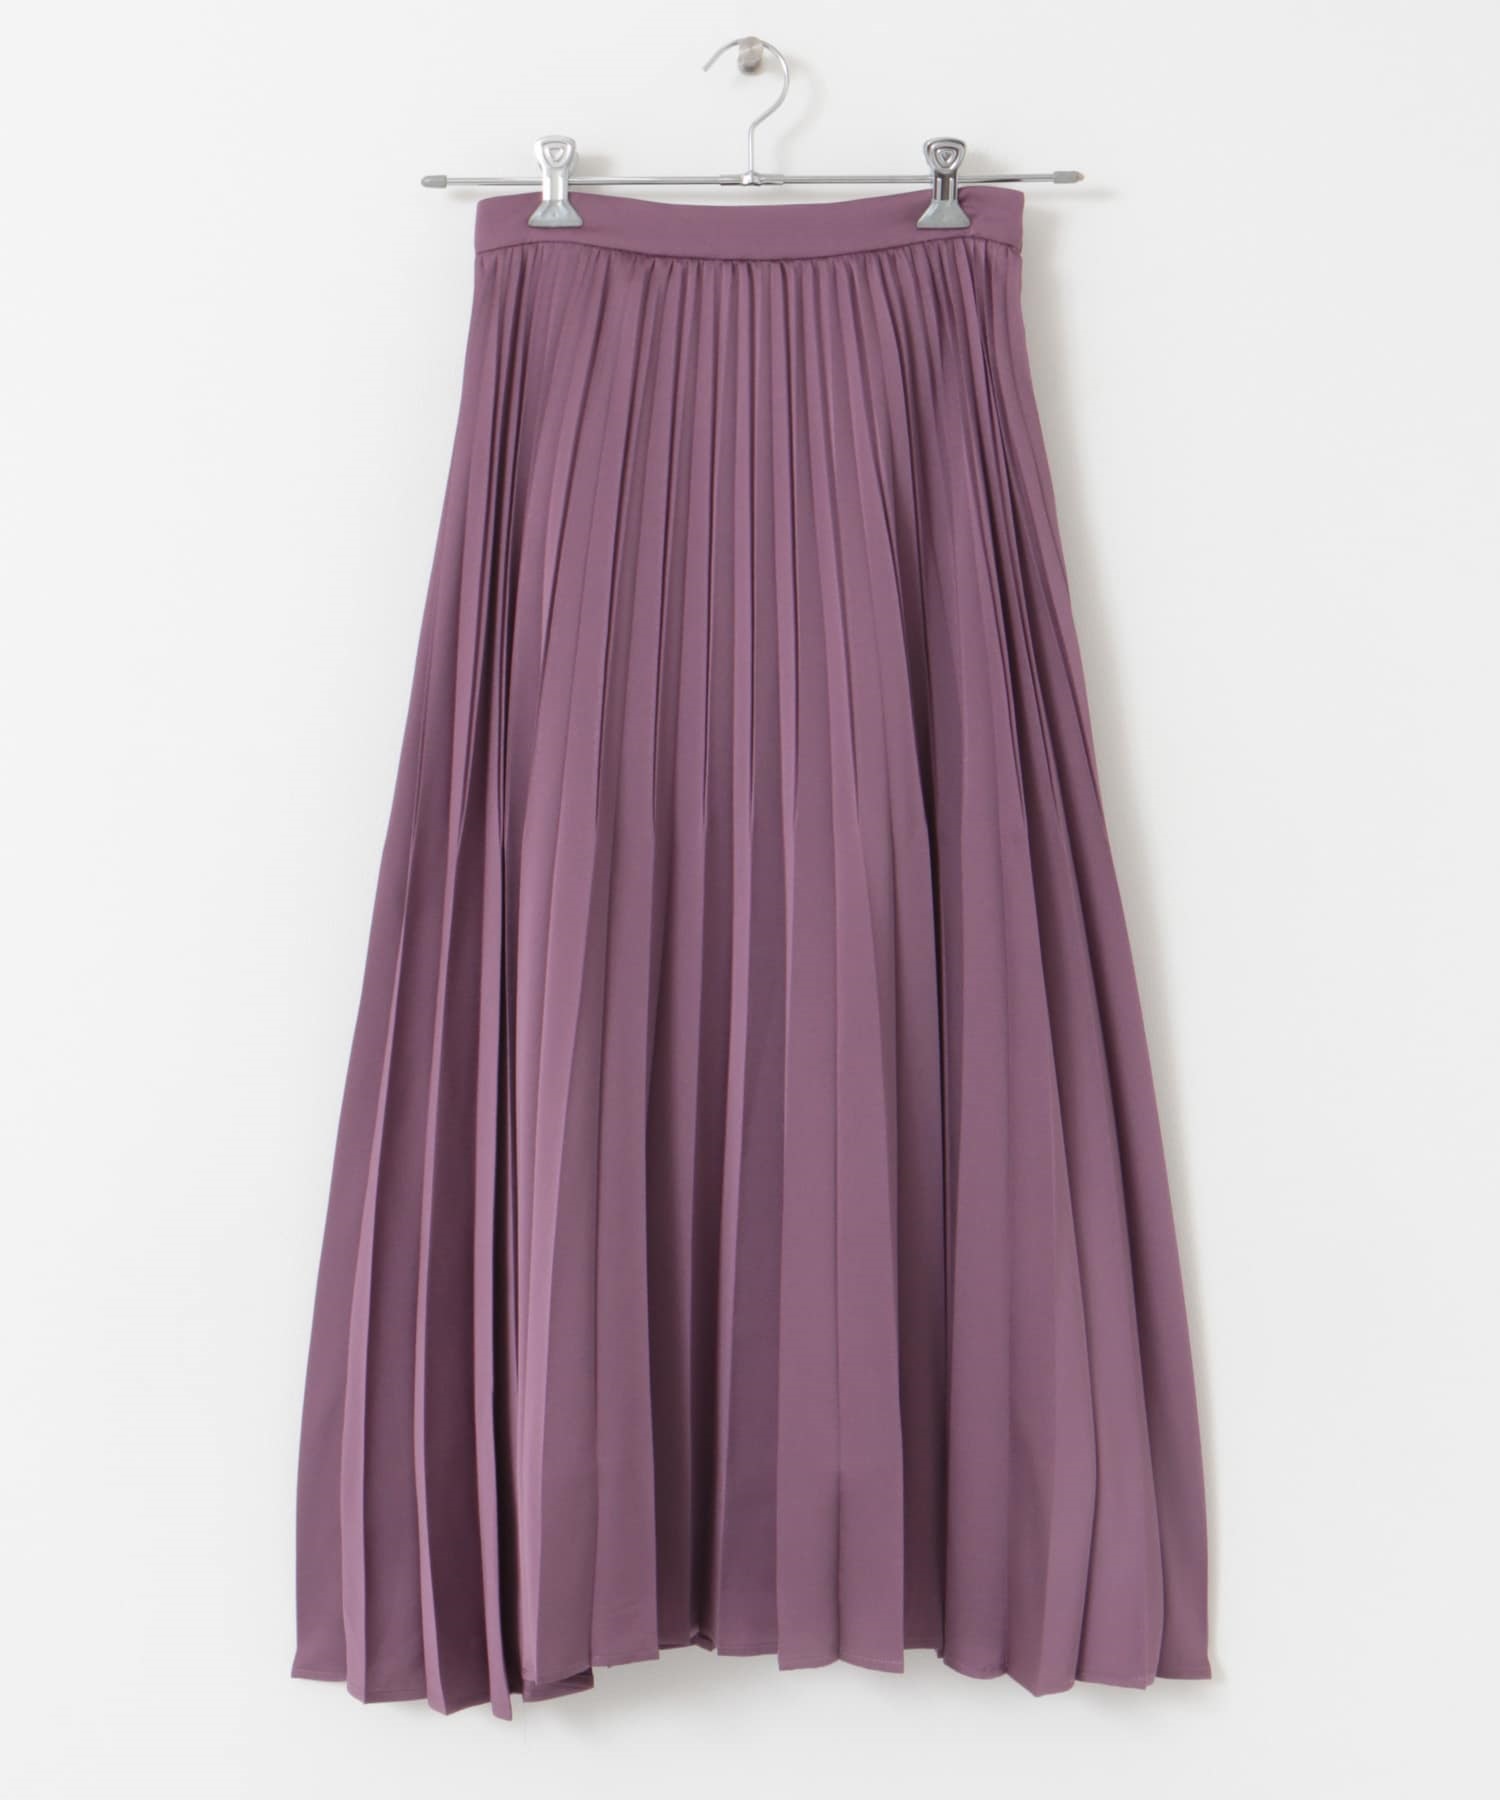 緞紋百褶裙(粉紅色-38-PINK)